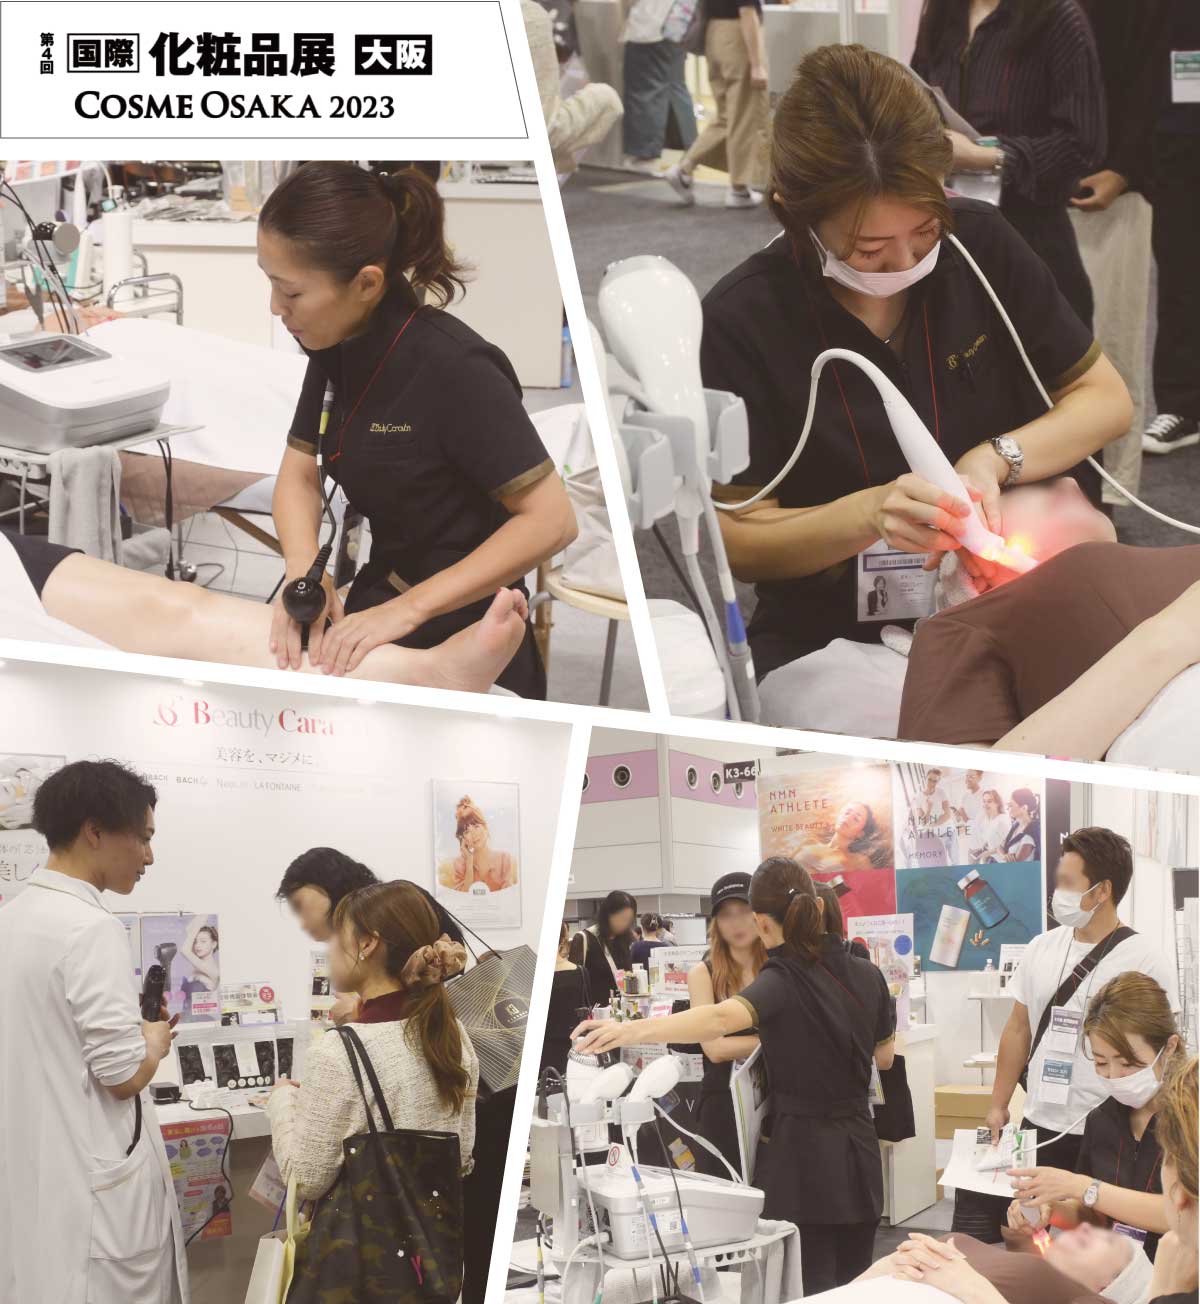 国際化粧品展大阪2023